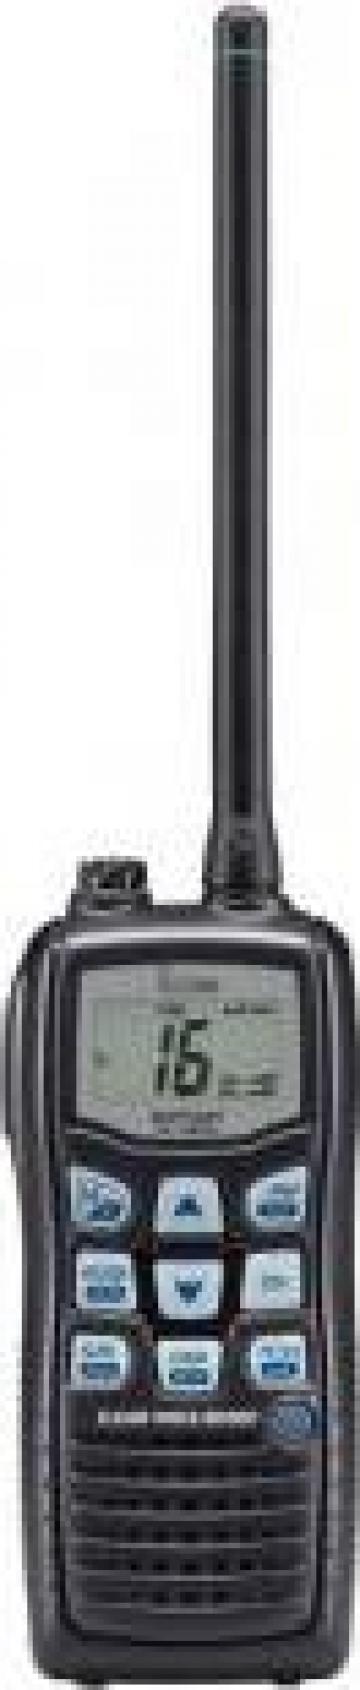 Reprogramari radiotelefoane VHF de la Pfa Blagoci Sergiu